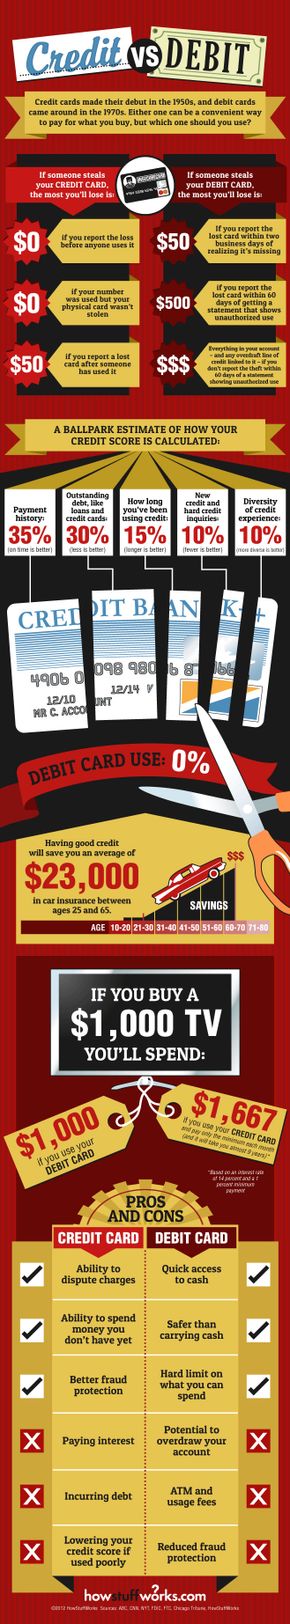 graphic showing credit versus debit cards